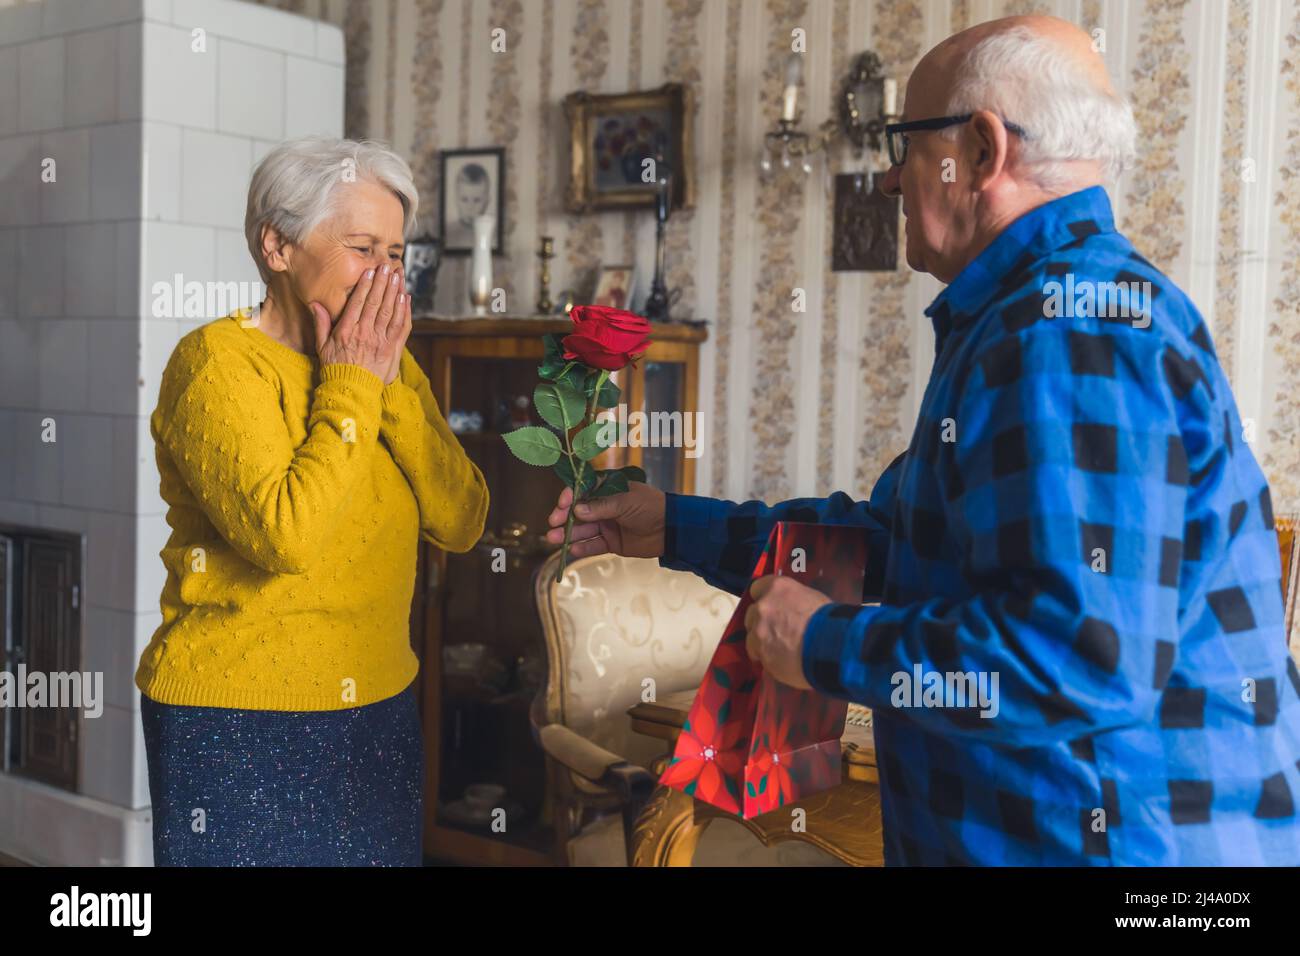 Buon compleanno. Senior pensionato gentleman sorprende la sua moglie anziana commossa con bella rosa rossa e un regalo per celebrare il suo compleanno. Interni vintage. Foto di alta qualità Foto Stock